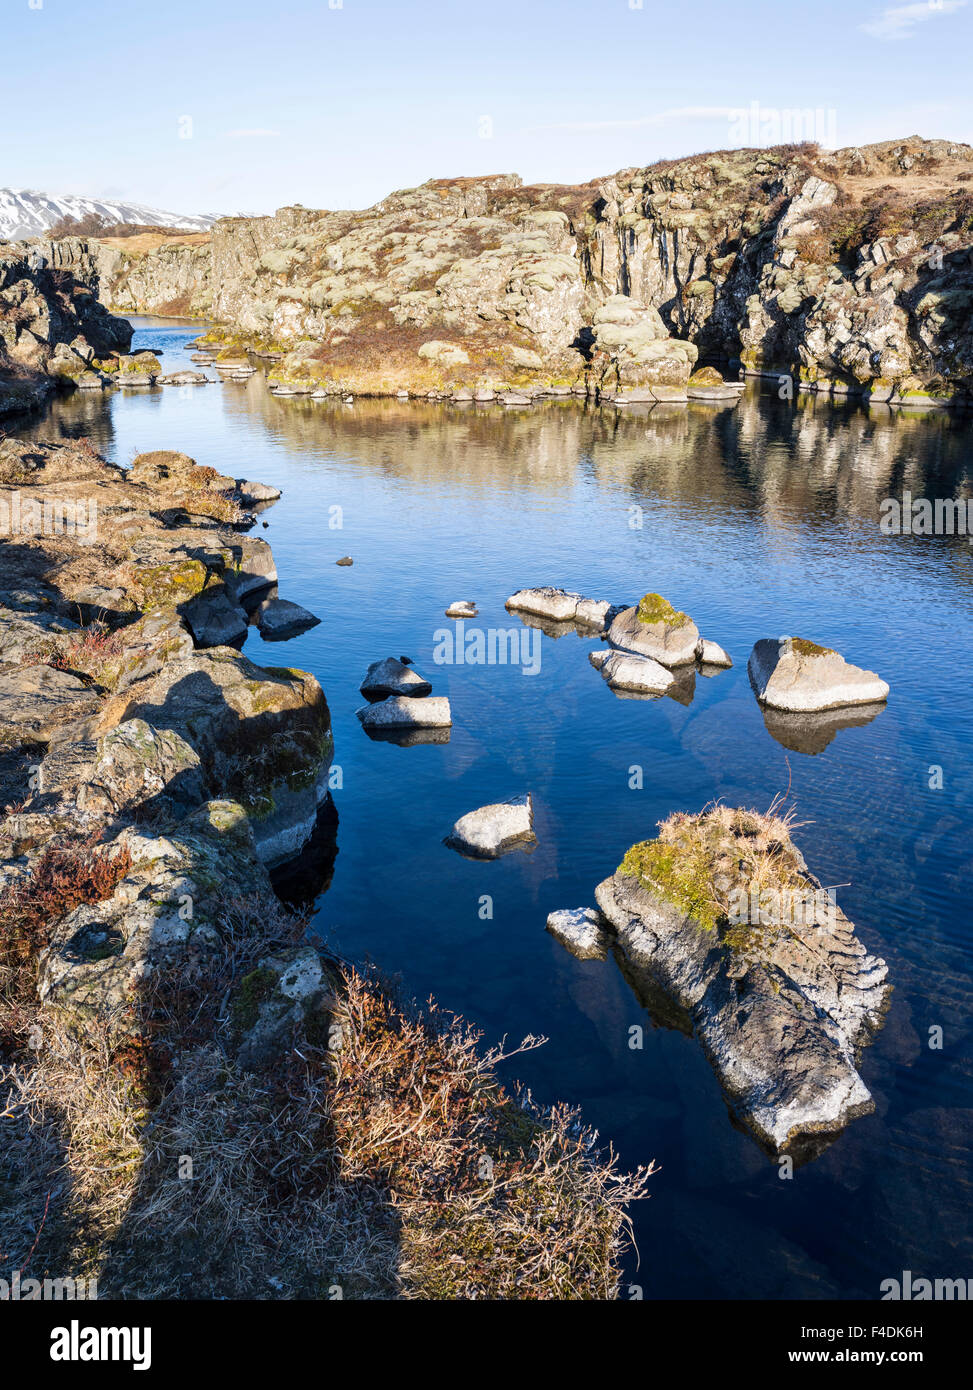 Le Parc National de Thingvellir en Islande au cours de l'hiver. Thingvellir est inscrit comme site du patrimoine mondial de l'UNESCO. La fissure géologique Flosagja au coucher du soleil. L'Europe, l'Europe du nord, Scandinavie, Islande, Mars (grand format formats disponibles) Banque D'Images